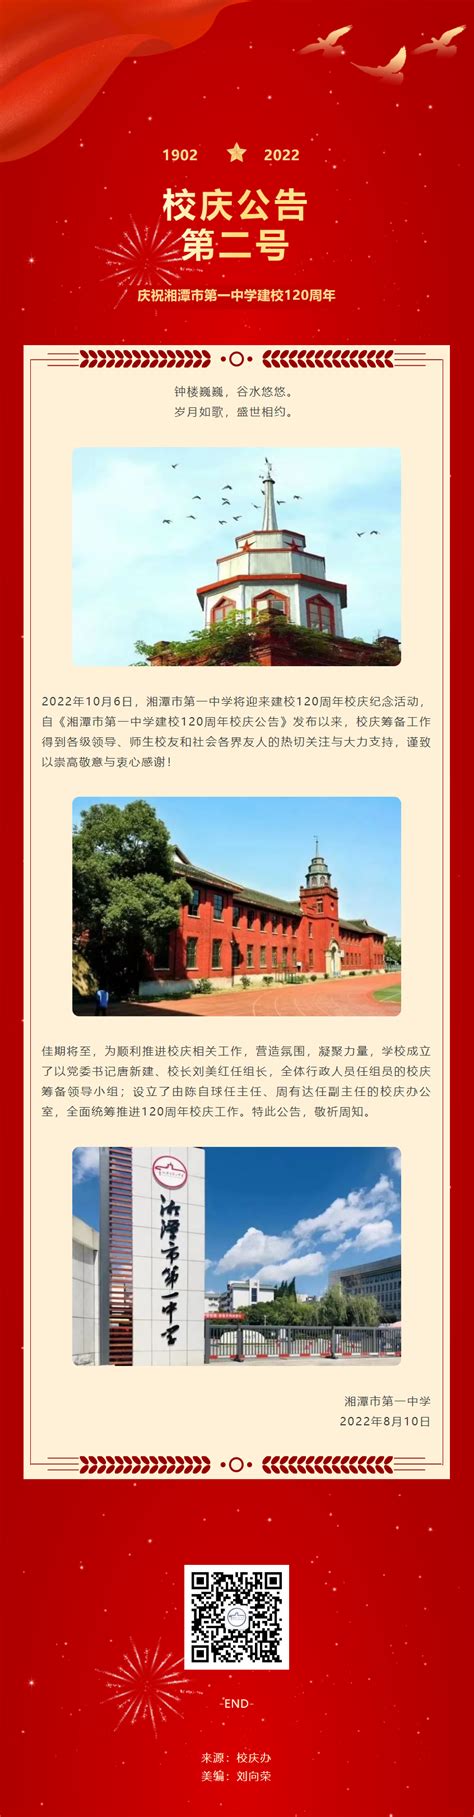 湘潭市第一中学建校120周年校庆公告（第二号）-校庆公告-潭中网